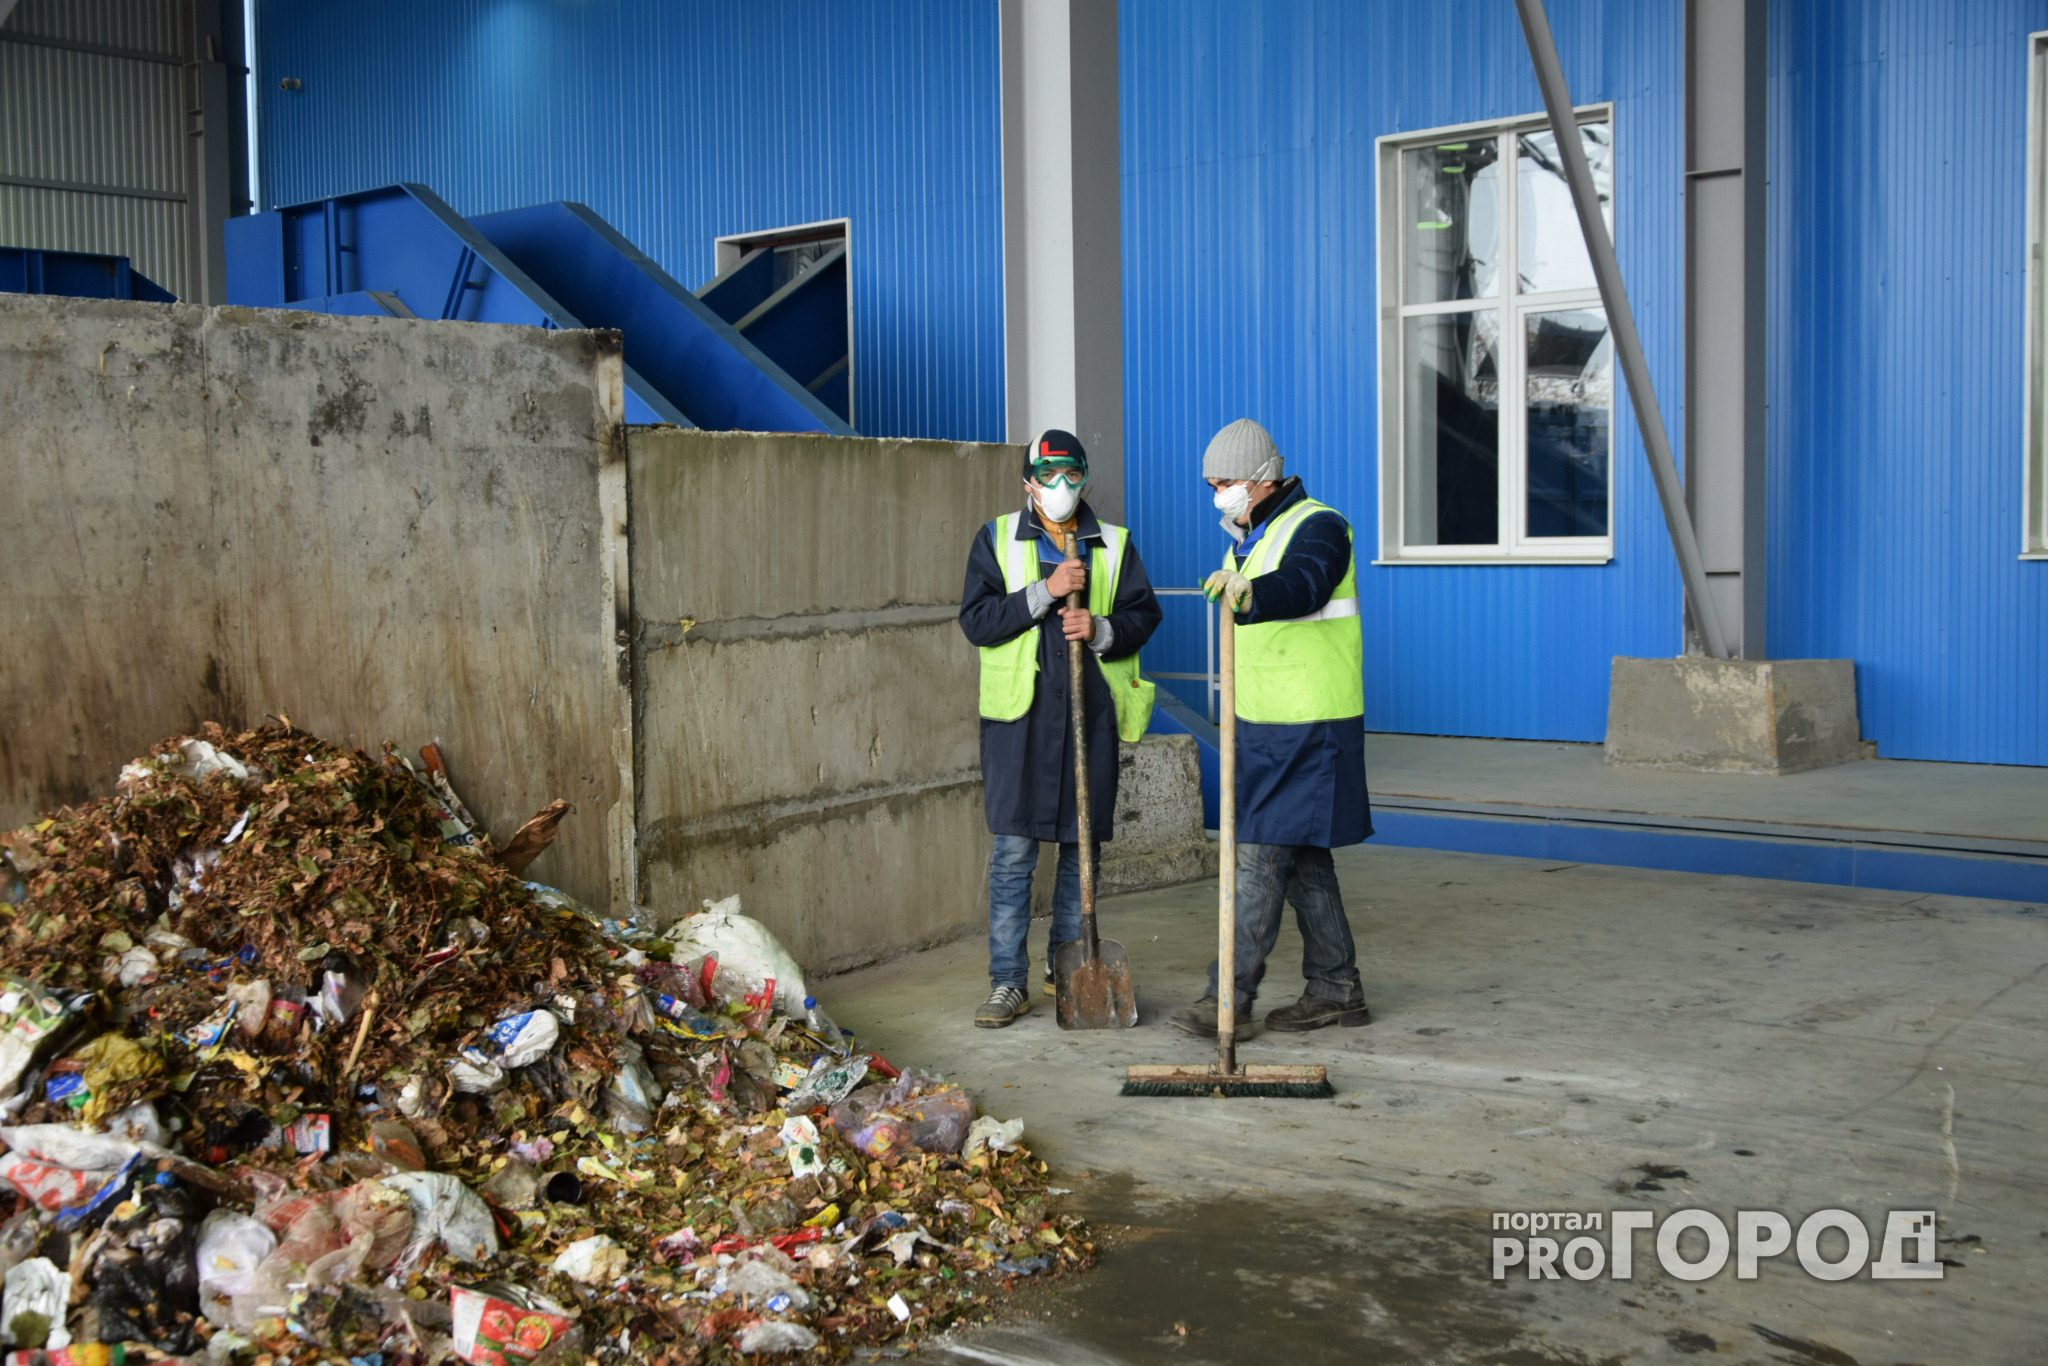 Нижегородская компания три года незаконно перерабатывала опасные отходы